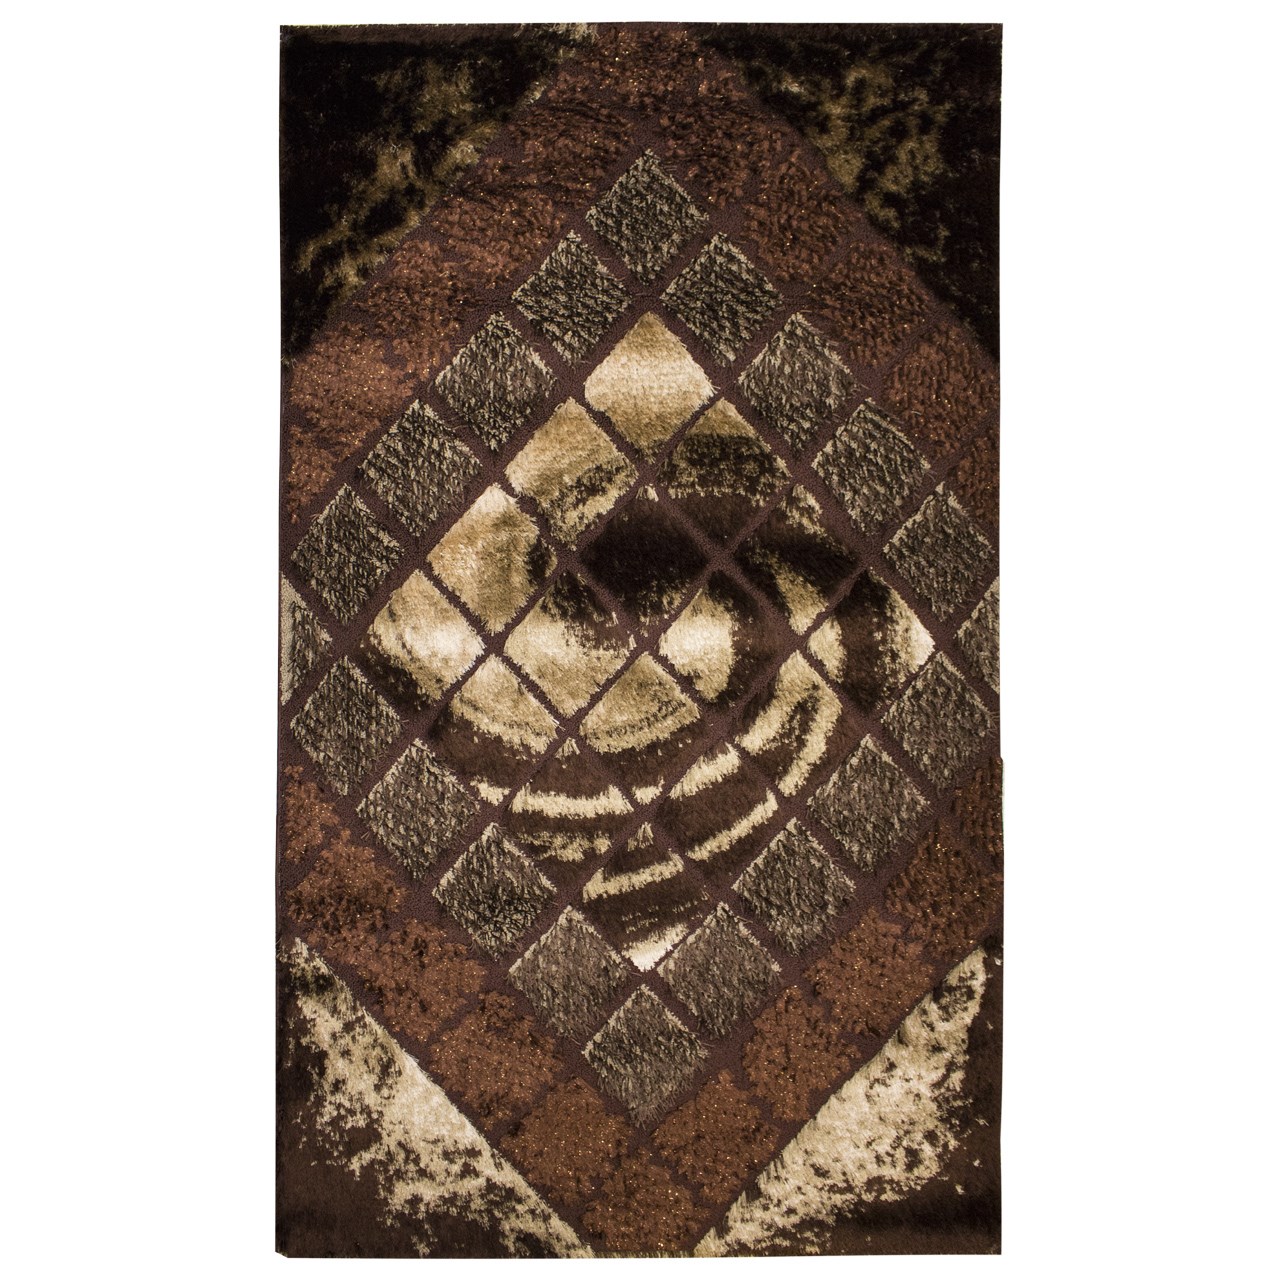 آنباکس فرش ماشینی پاتریس کد 0086 زمینه قهوه ای توسط رشید کریمی در تاریخ ۰۶ دی ۱۴۰۰